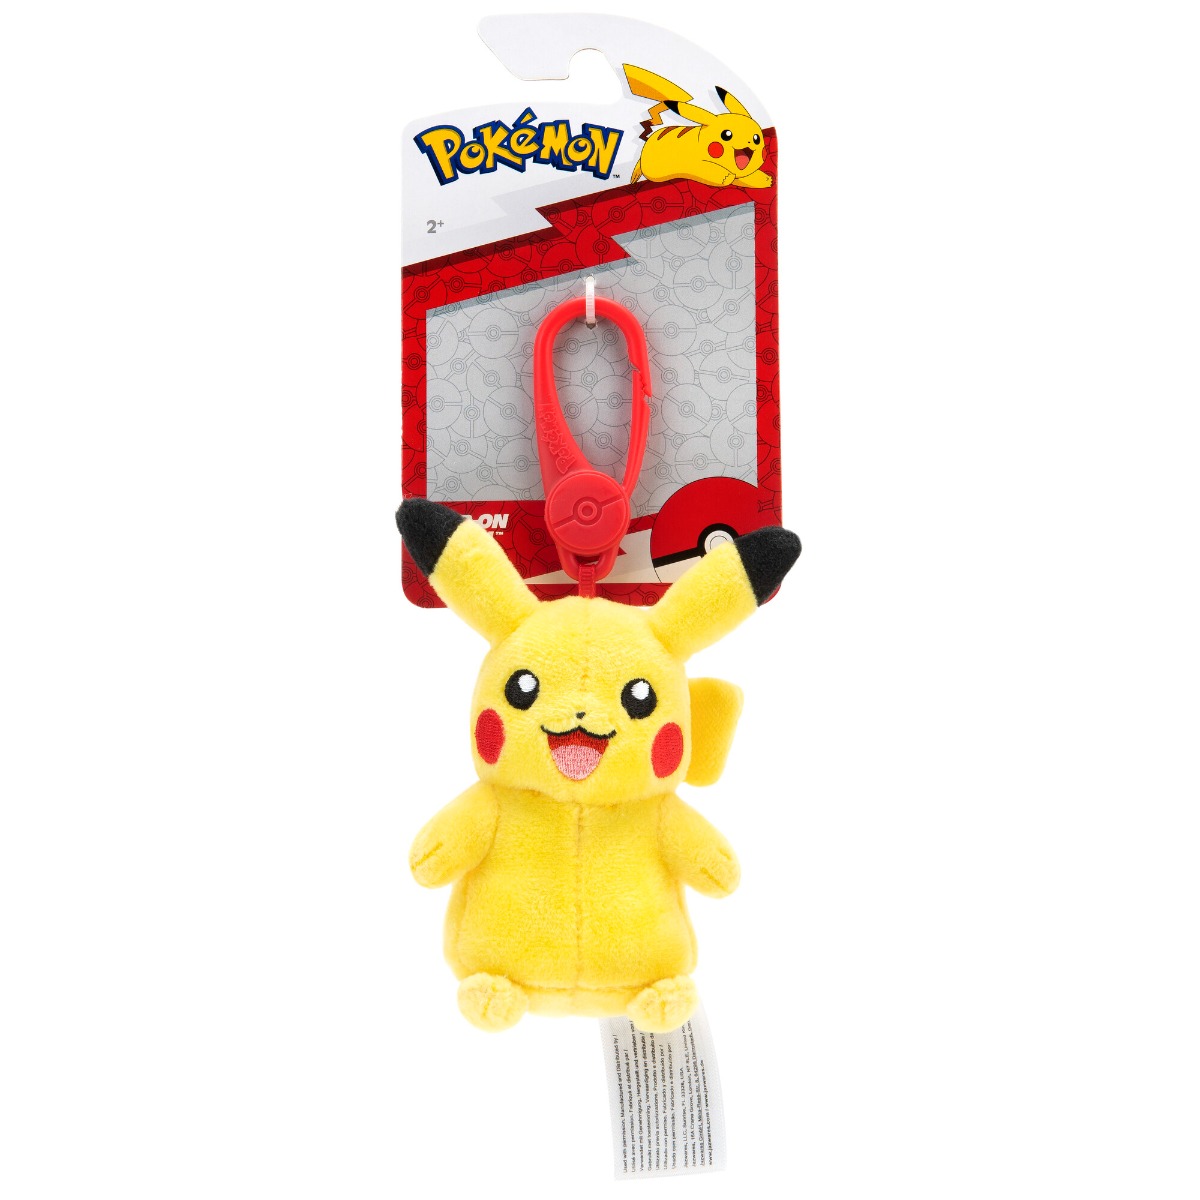 Pokemon - jucarie de plus cu agatatoare, pikachu #2, s6